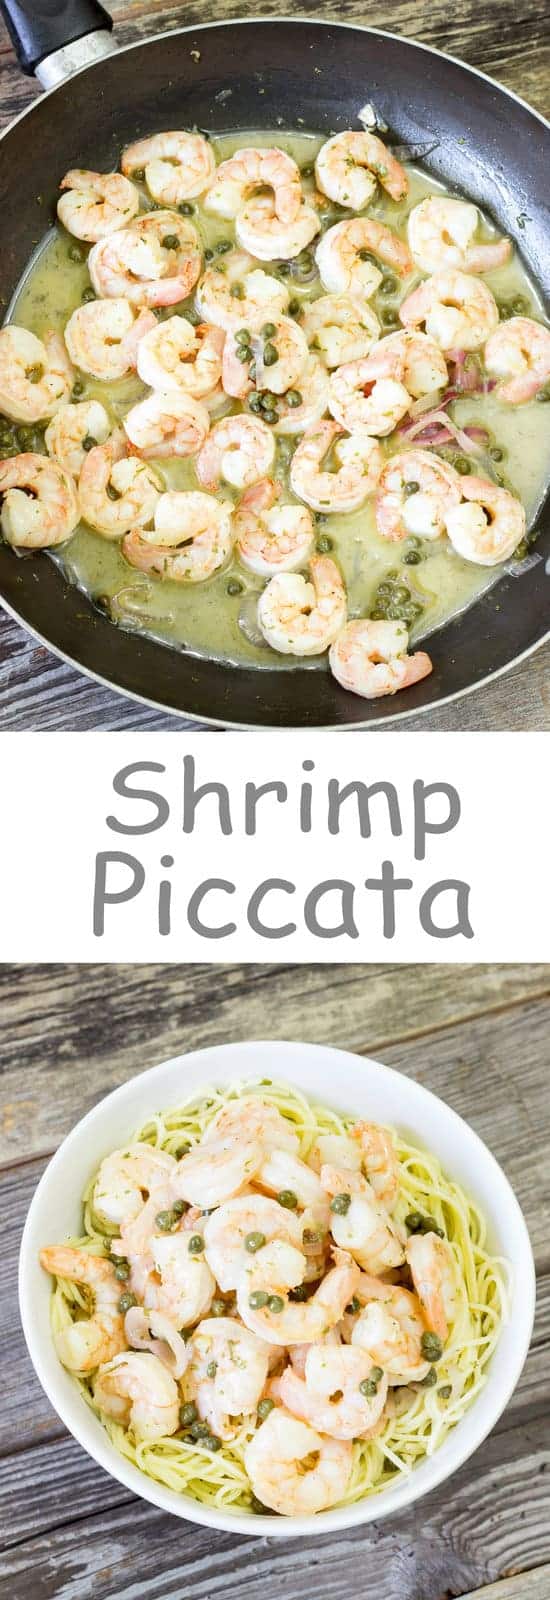 Shrimp Piccata - The Wholesome Dish